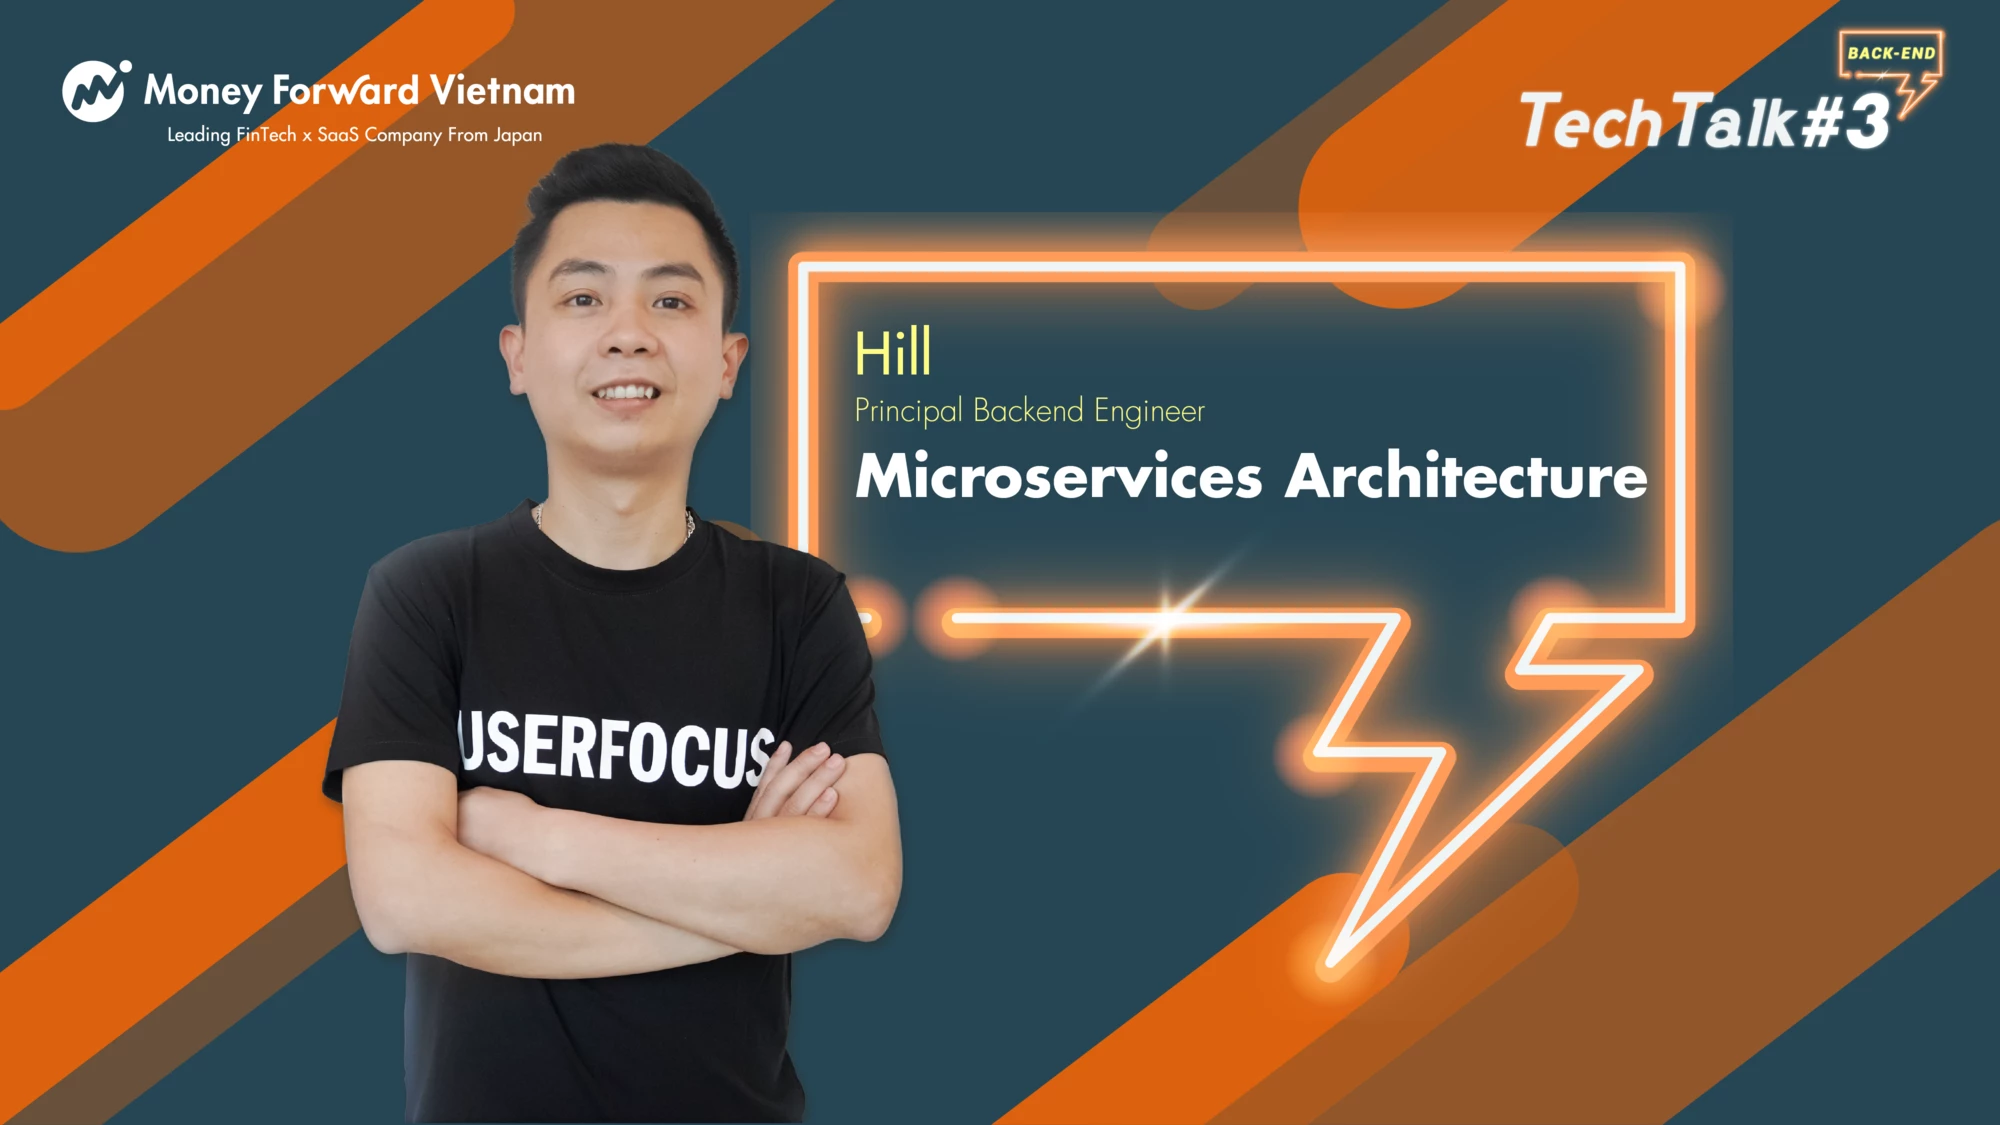 MFV Tech Talk #3 - Microservice Architect | Hill